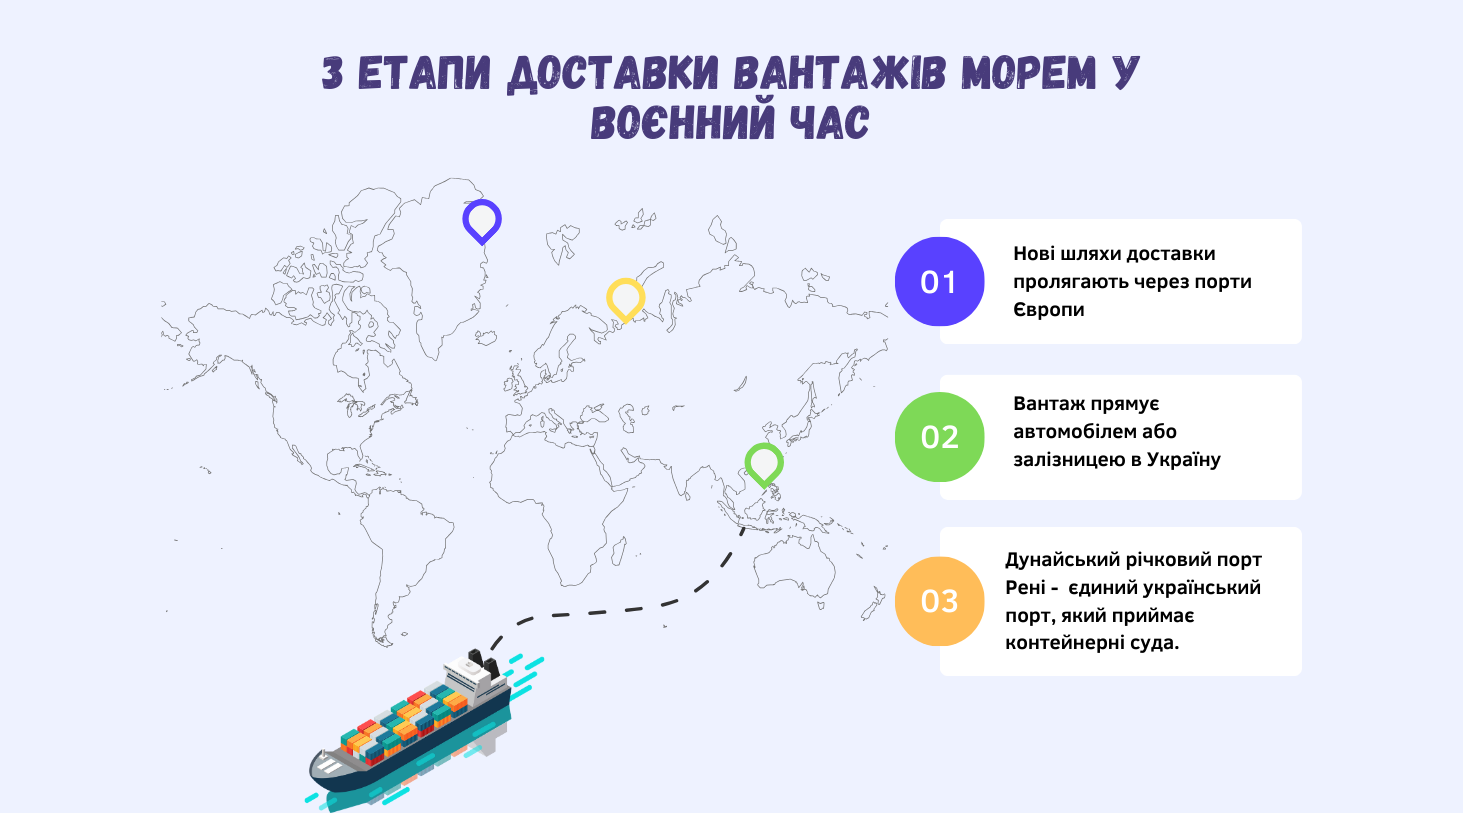 Грузовые перевозки морем в Украину в военное время_картинка